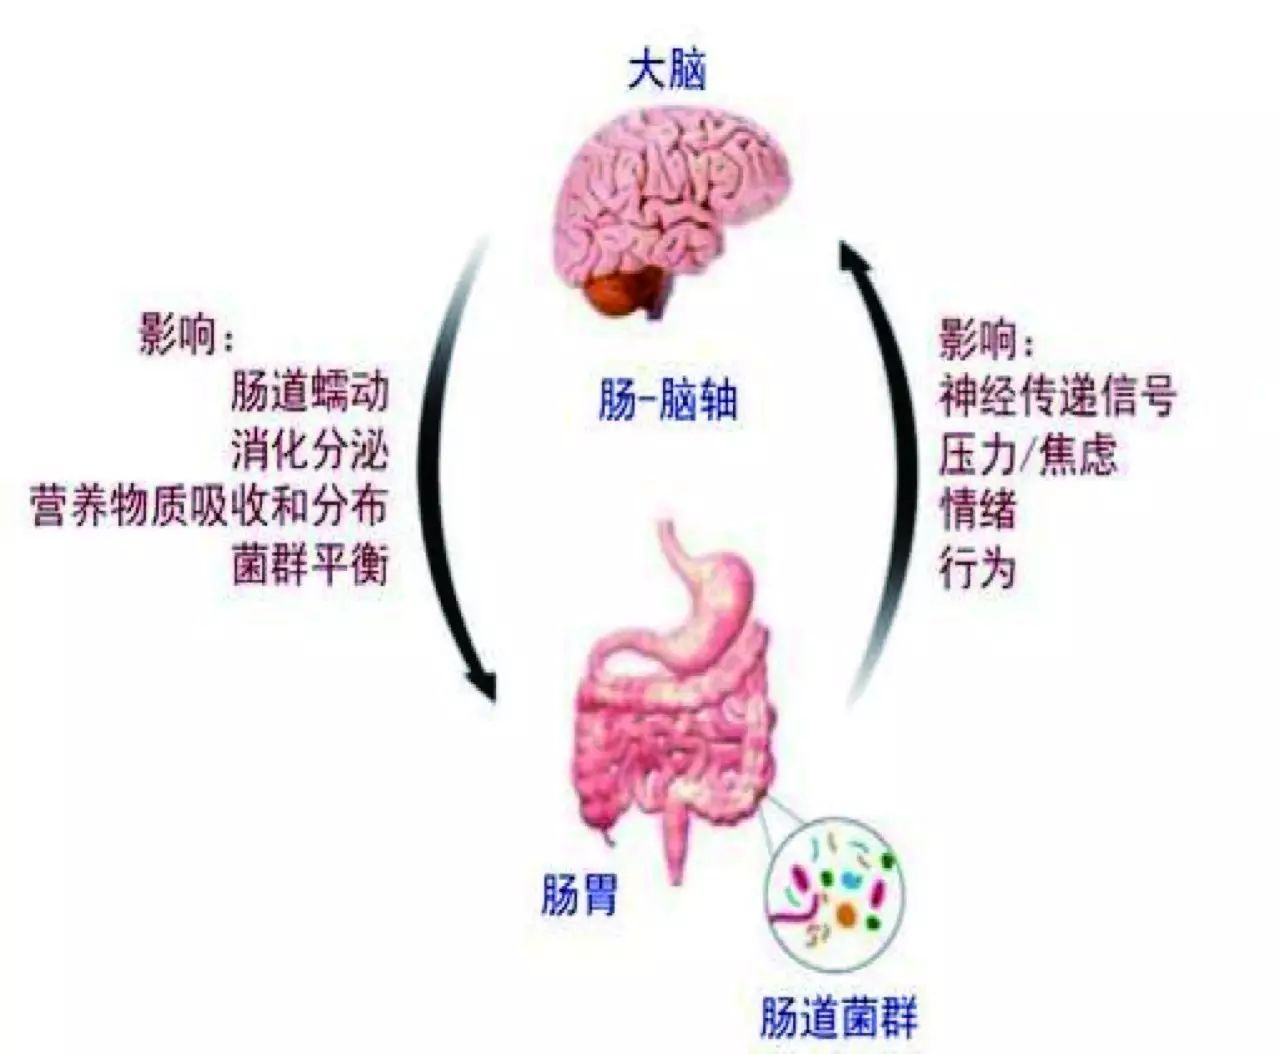 2,肠道有益菌可以降低黏膜炎症反应 研究发现,肠易激综合症患者肠